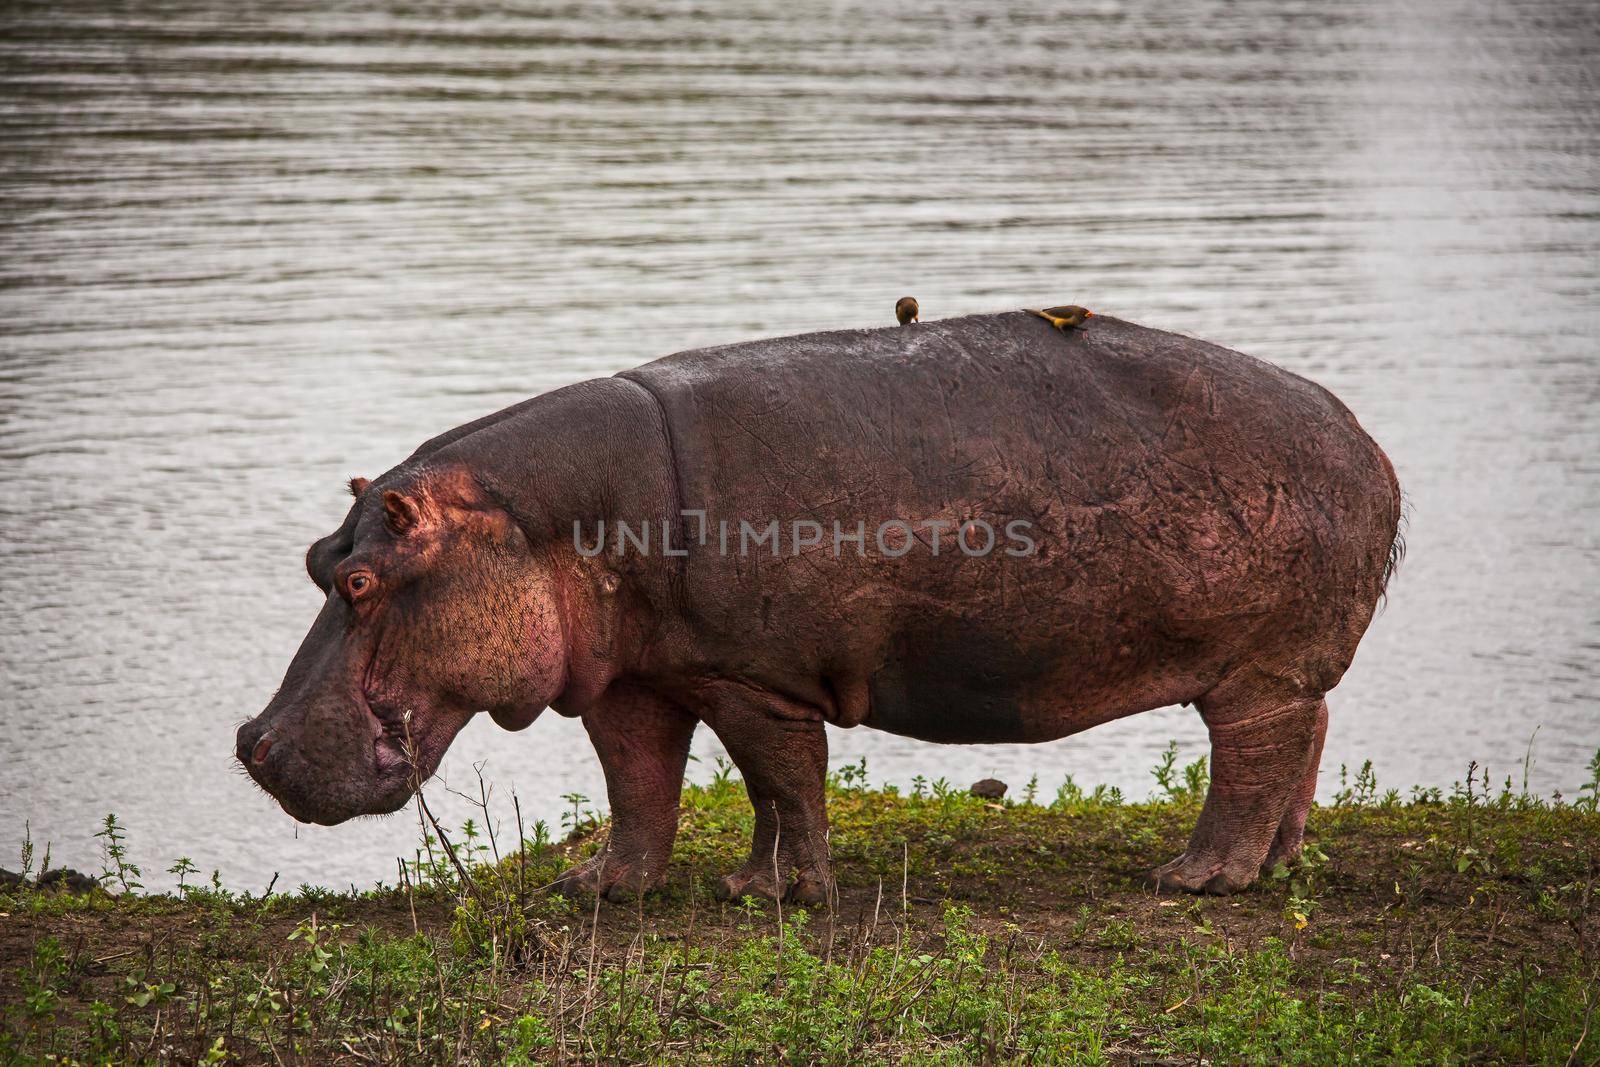 Grazing Hippo (Hippopotamus amphibius) 15114 by kobus_peche